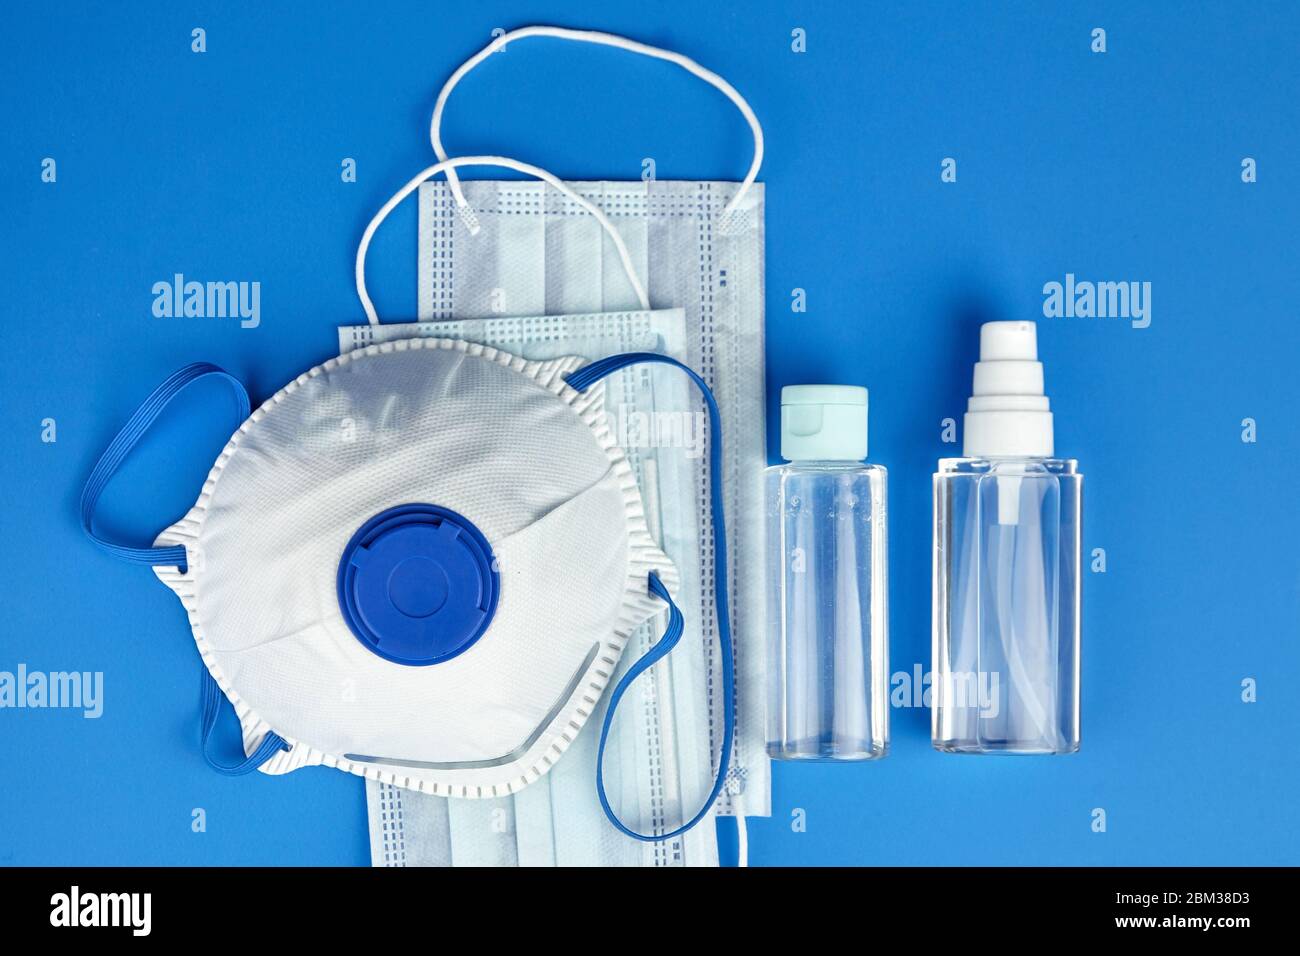 Respiratore per facciali filtranti N95, maschere chirurgiche monouso, flaconi di igienizzante antibatterico per mani (gel antisettico alcolico) su fondo blu, a. Foto Stock